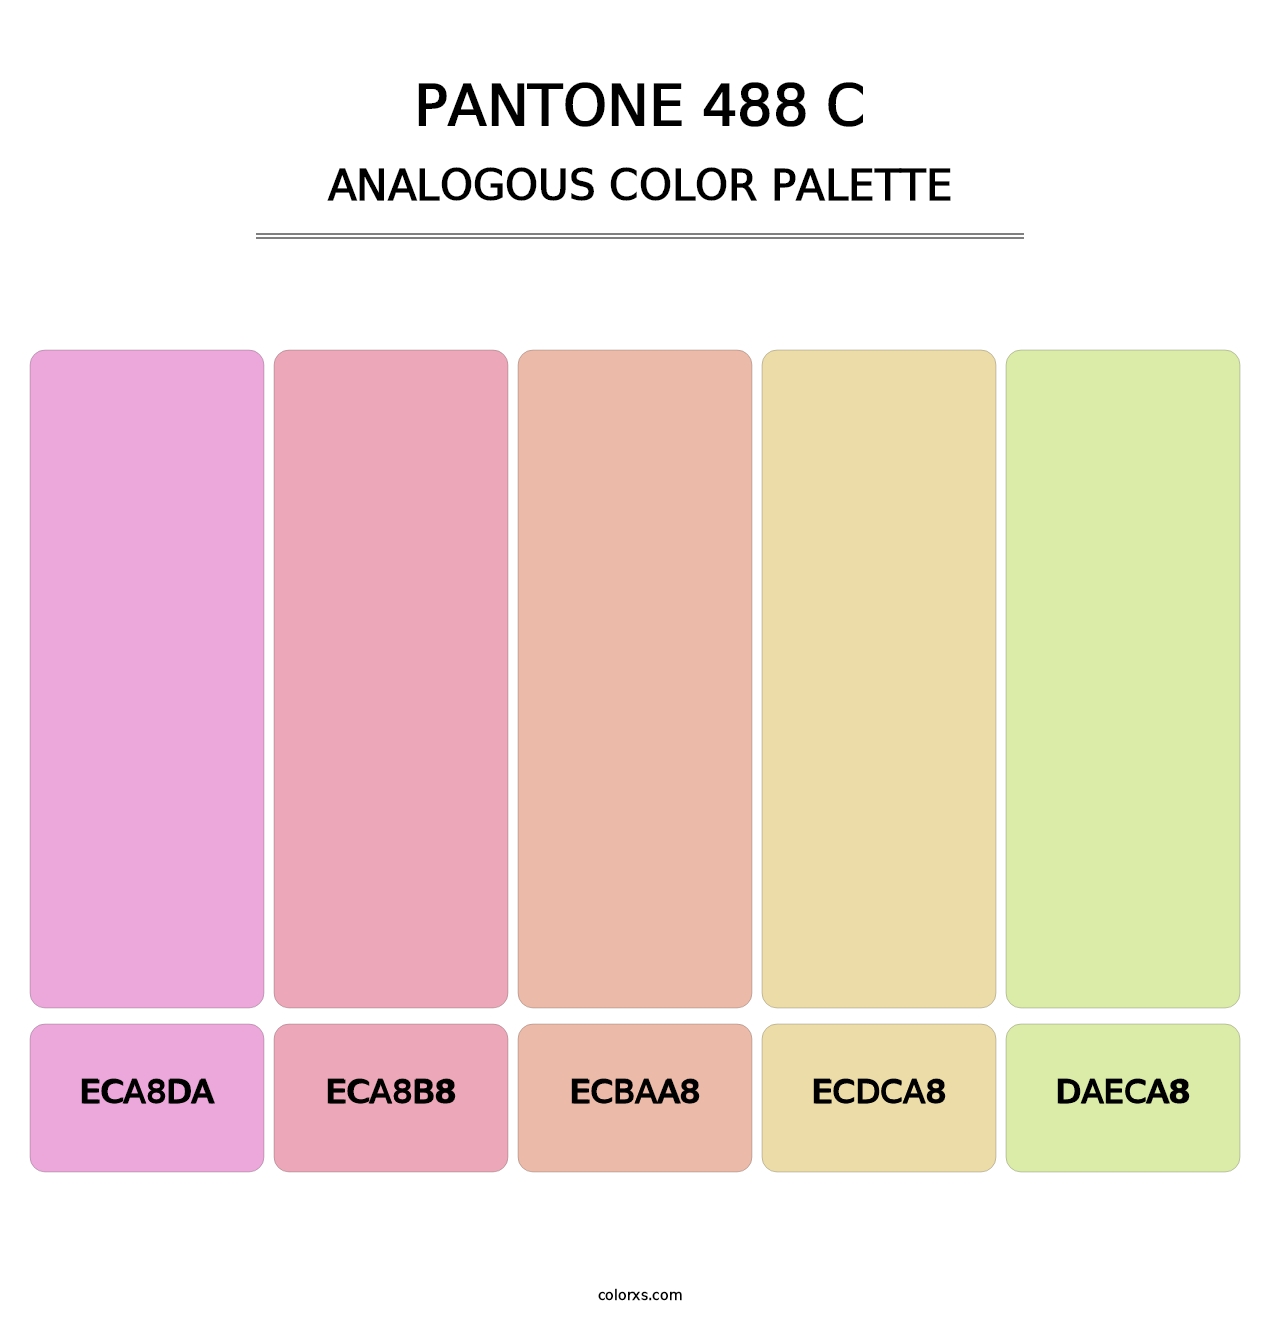 PANTONE 488 C - Analogous Color Palette